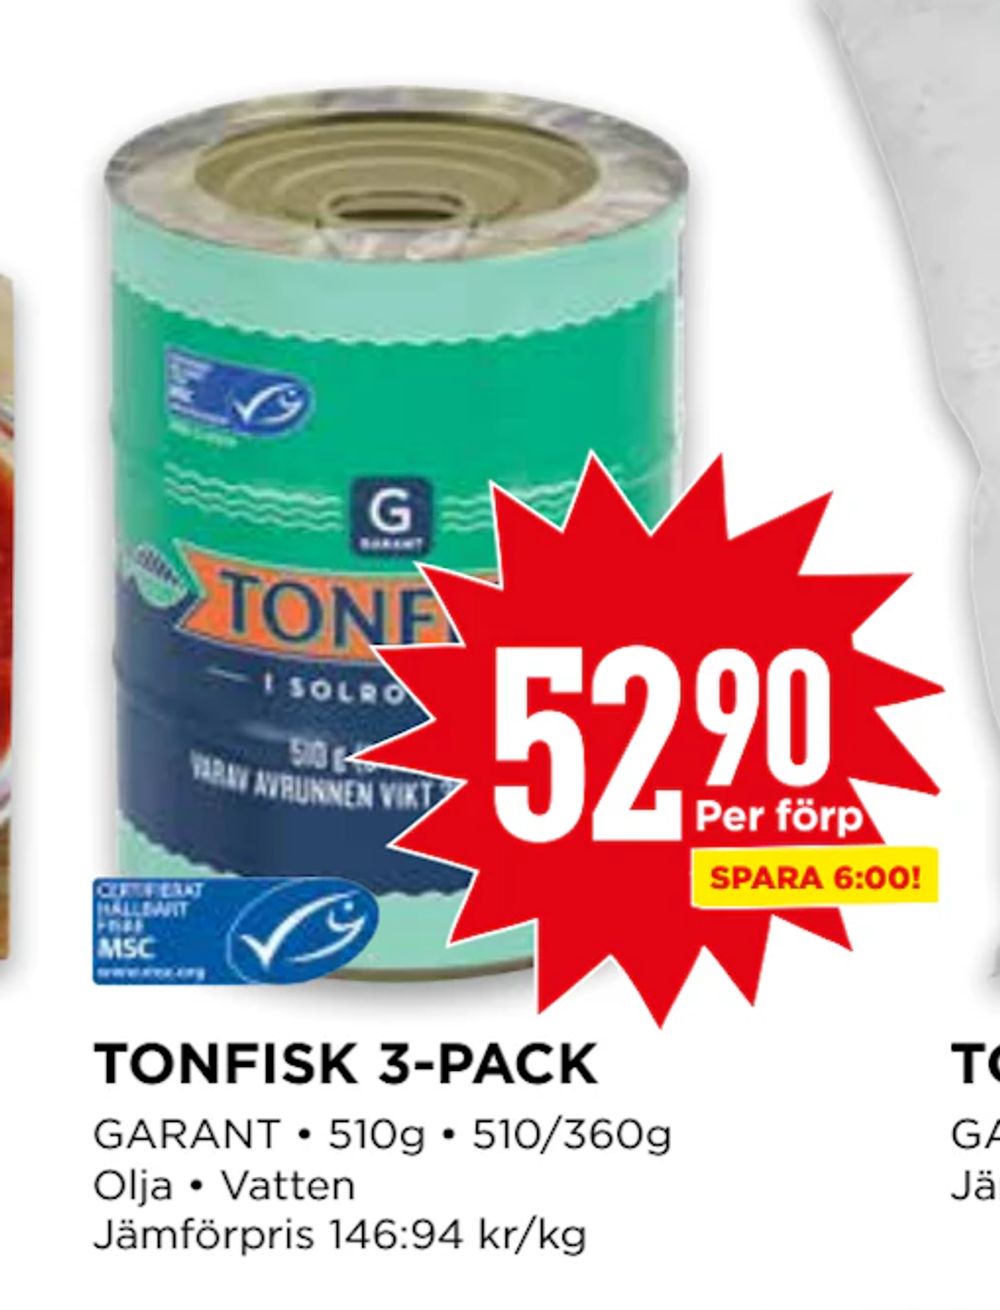 Erbjudanden på TONFISK 3-PACK från Willys för 52,90 kr